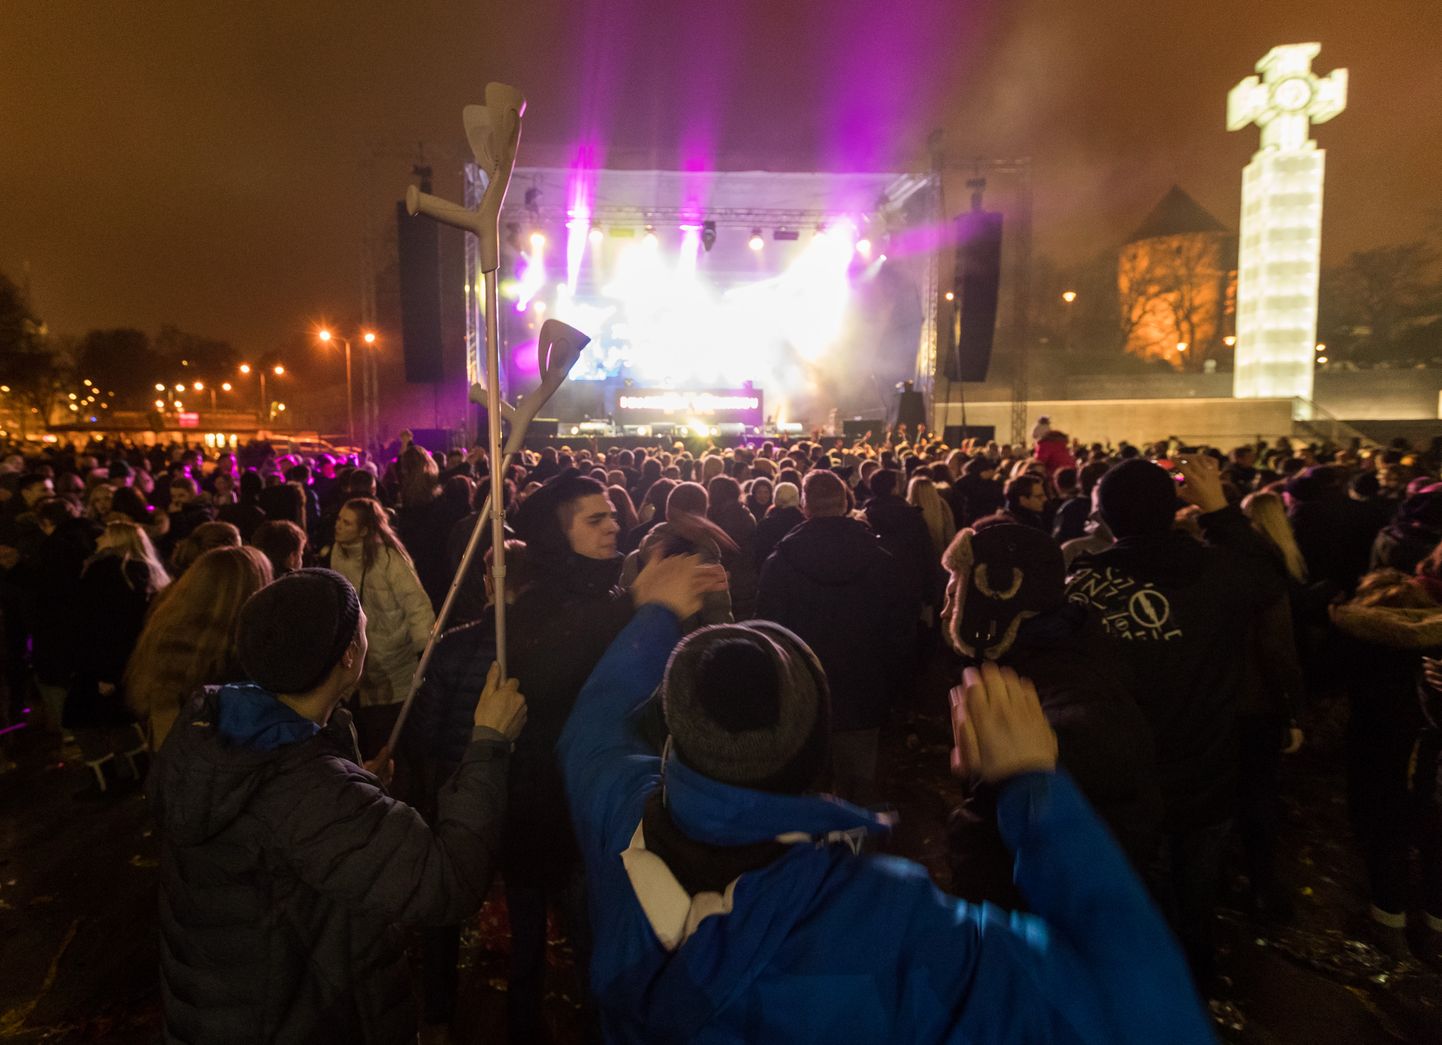 31 декабря, в 22:00 на площади Вабадузе начнется бесплатный концерт.